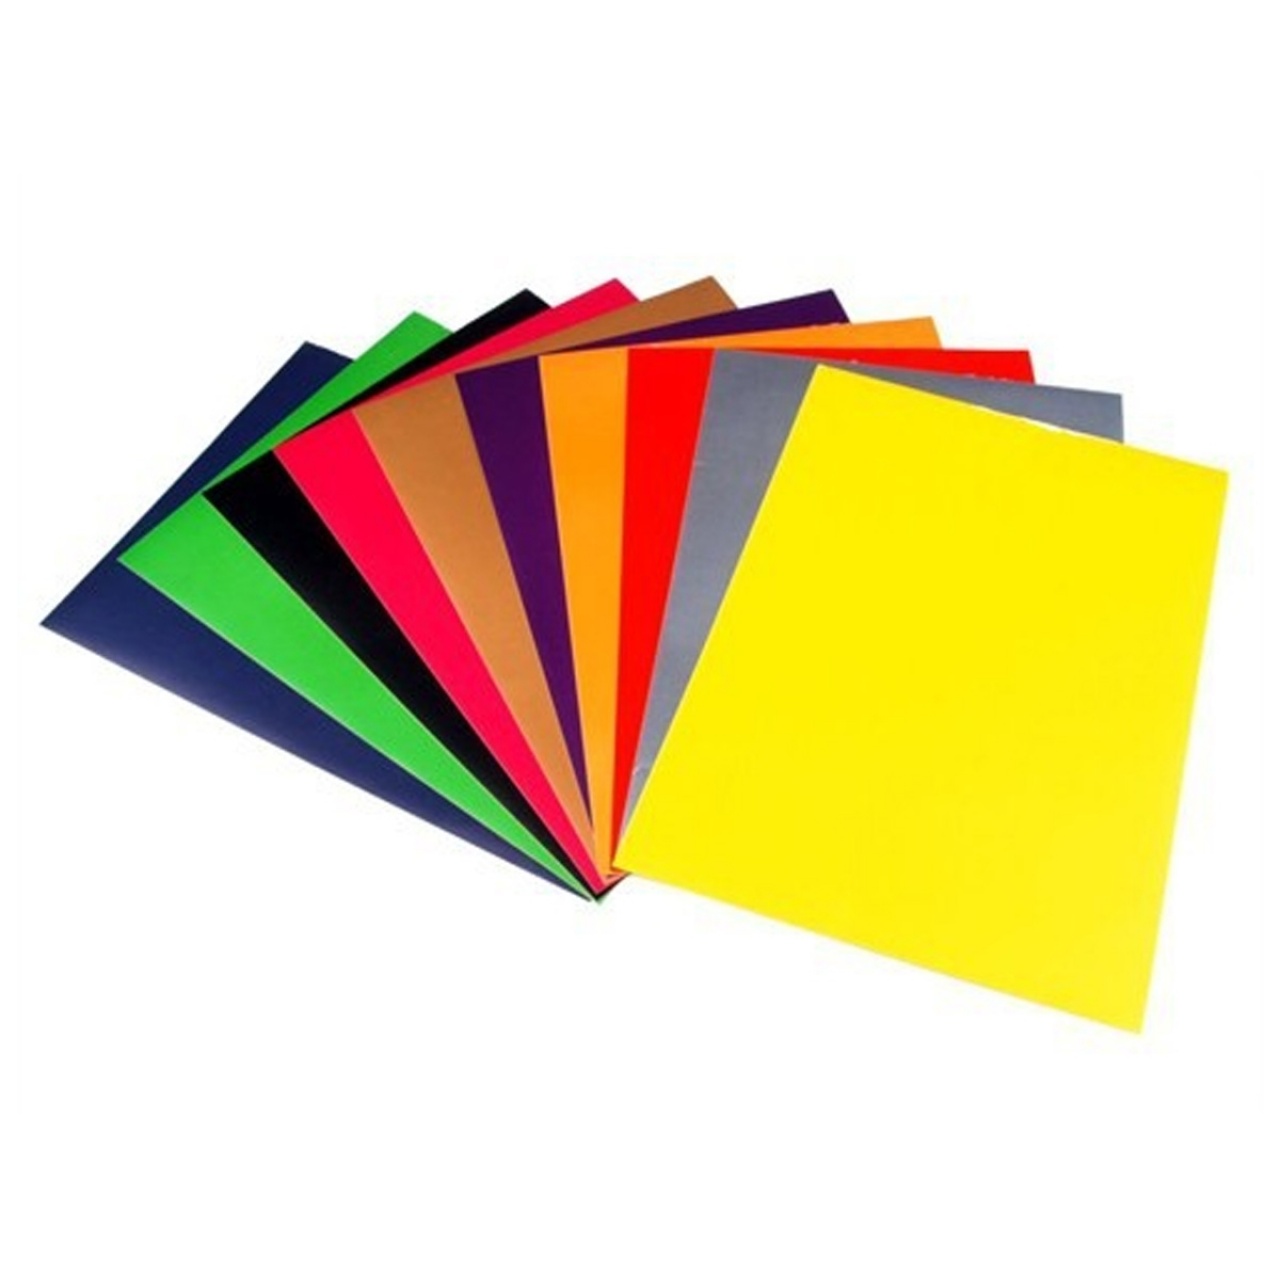 Цвета цветной бумаги. Цветная бумага. Цветная бумага и картон. Цветная бумага для детей. Разноцветная бумага.